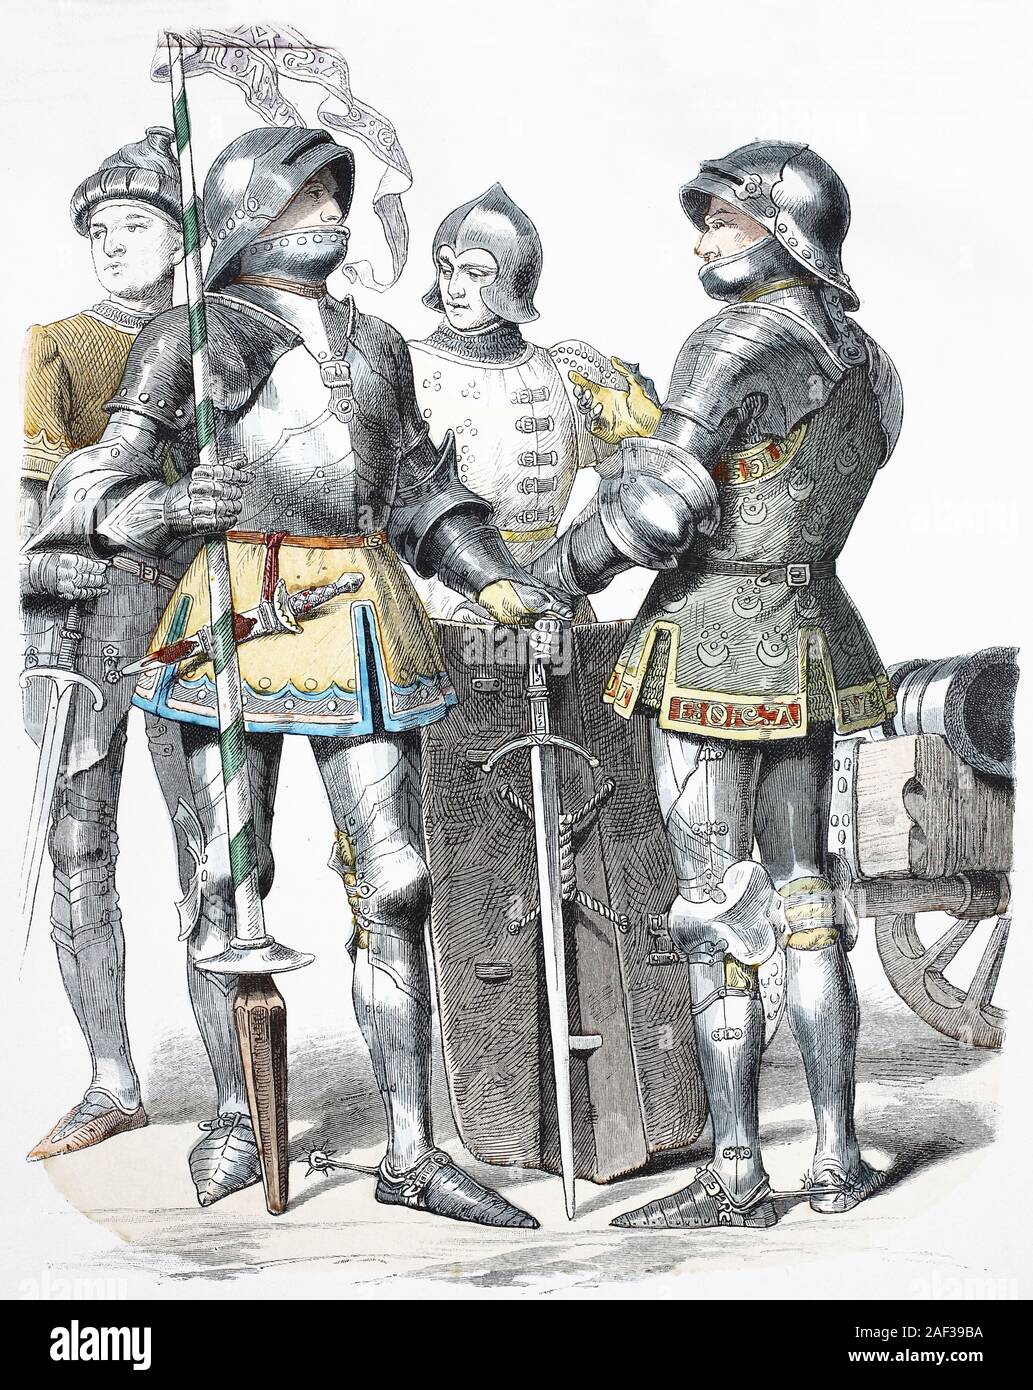 Il costume nazionale, vestiti, la storia dei costumi, cavalieri provenienti dalla Borgogna, in Francia, nel 1470, Volkstracht, Kleidung, Geschichte der Kostüme, Ritter aus Burgund, Frankreich, 1470 Foto Stock